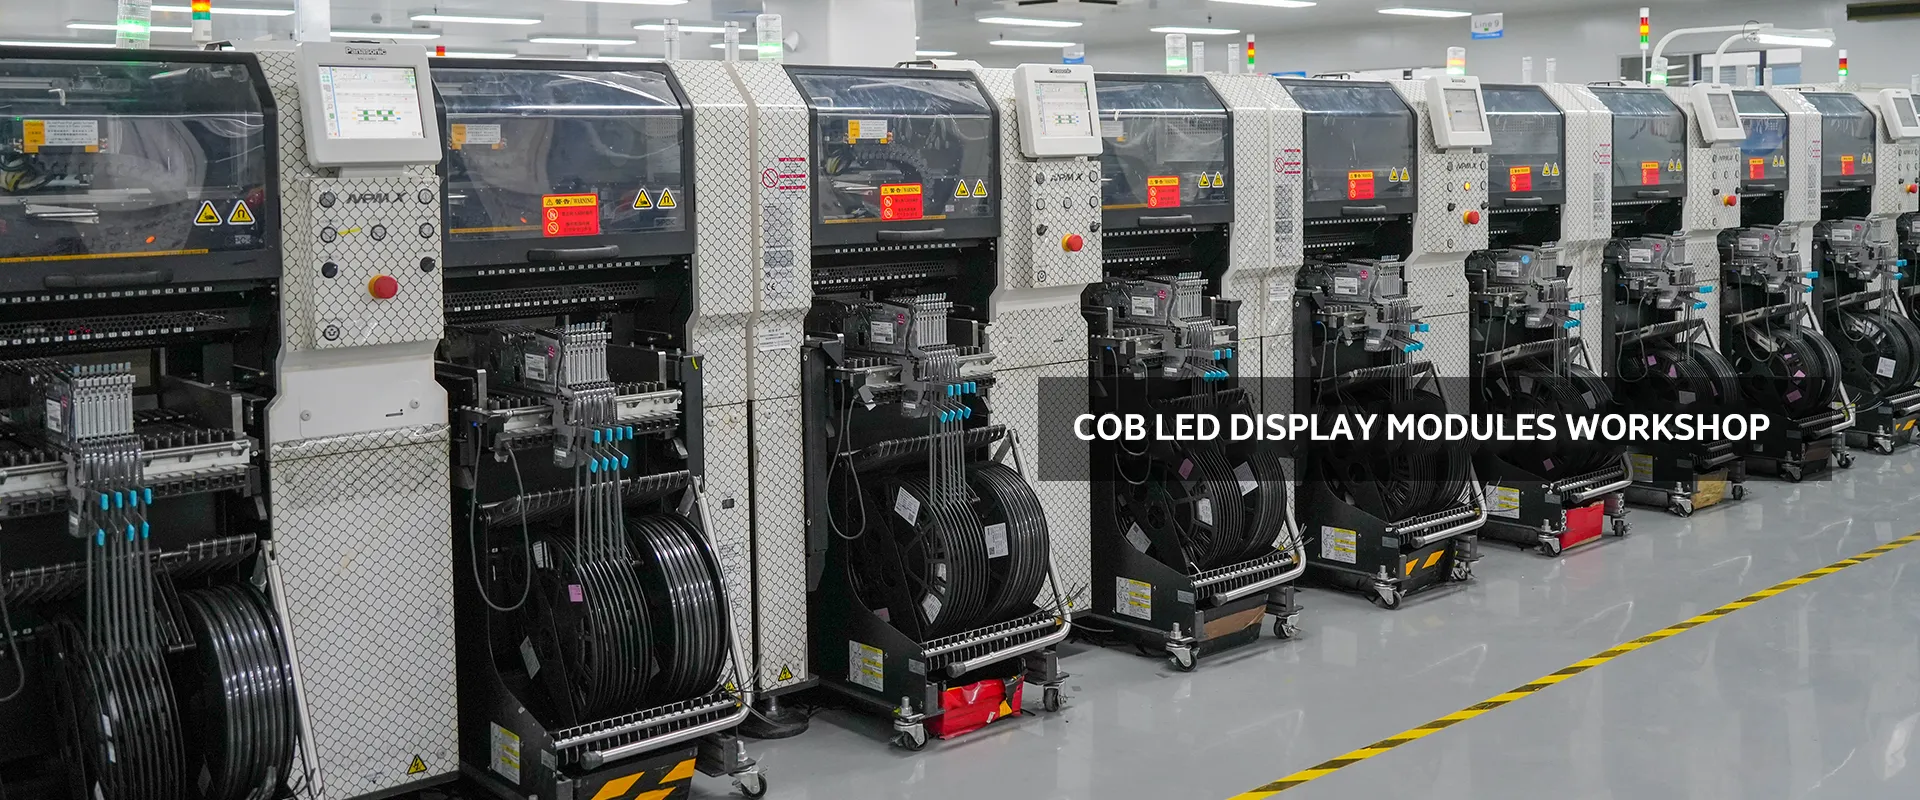 cob led display manufacturer workshop copy